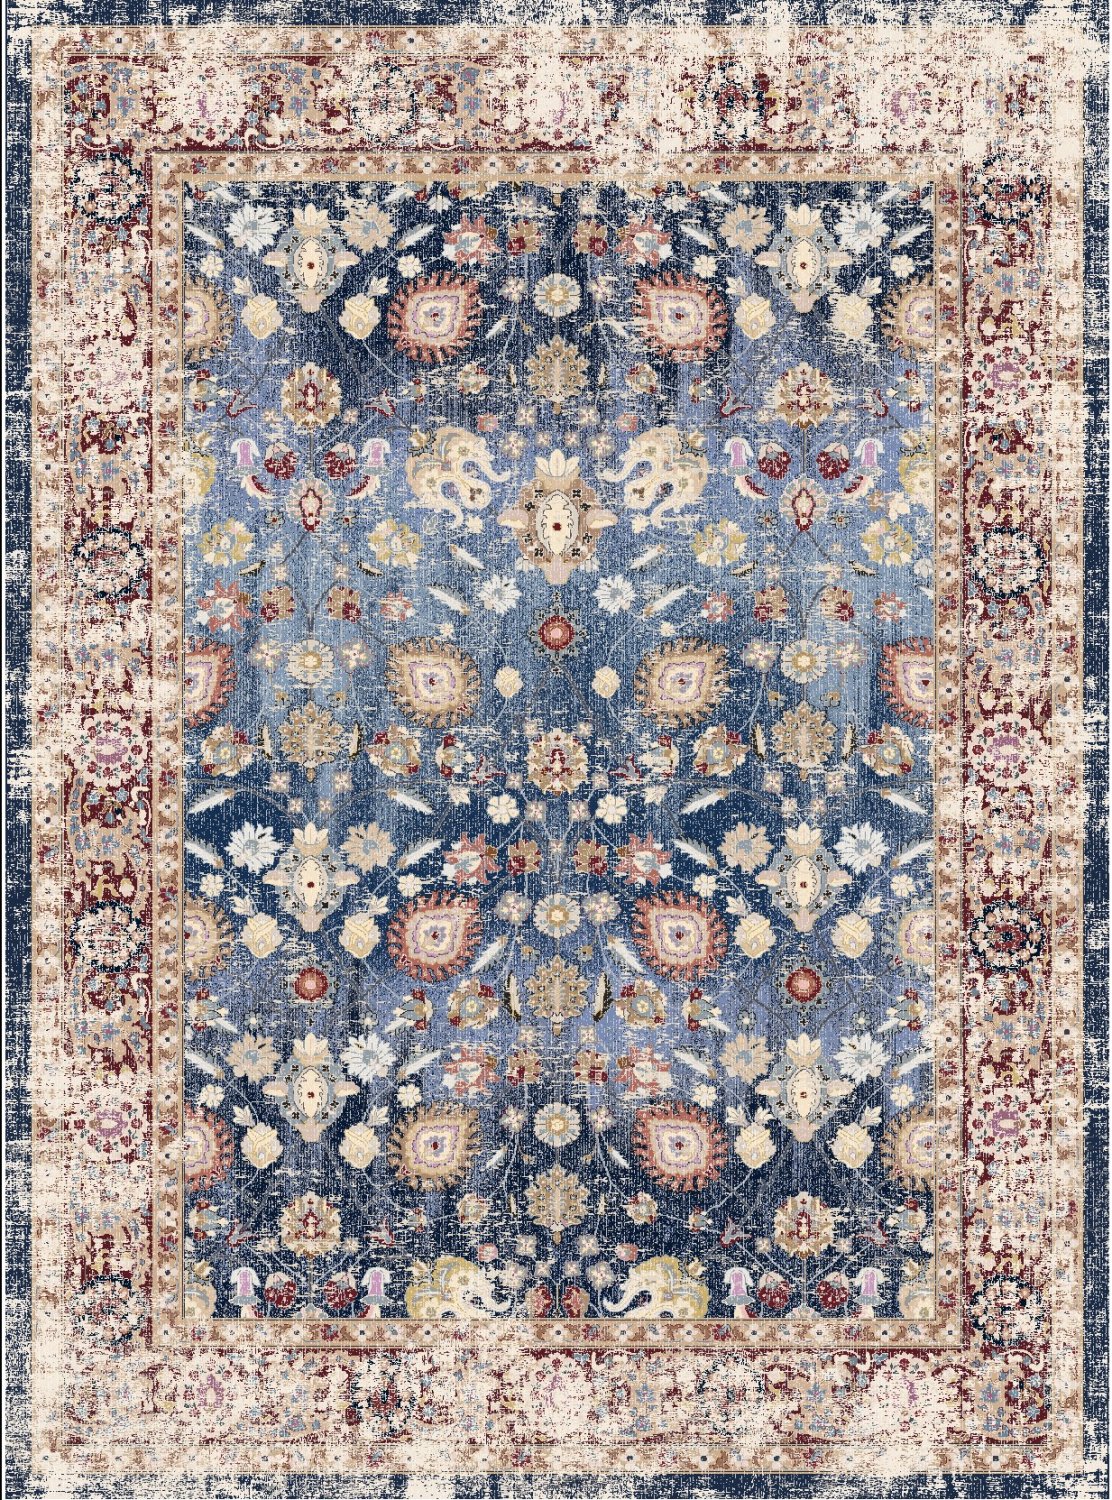 Wilton rug - Bouhjar (dark blue/multi)